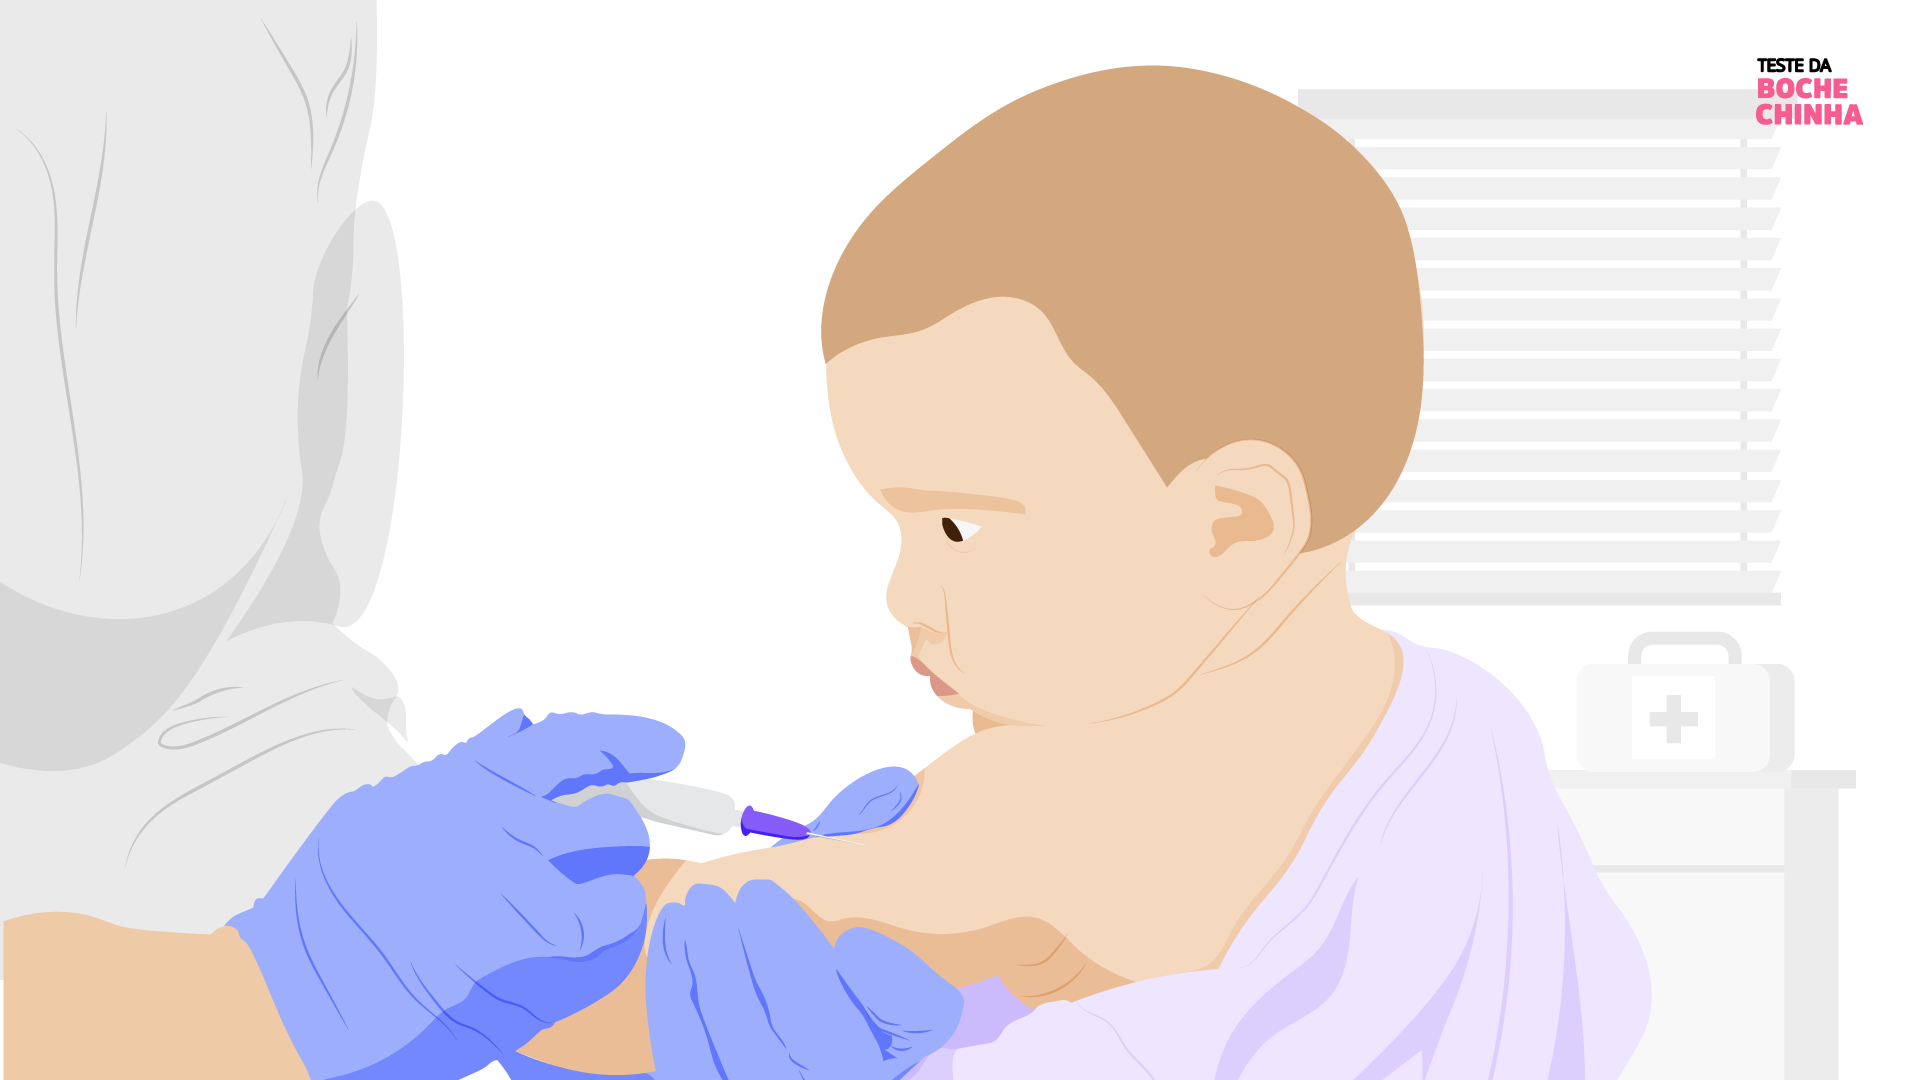 desenho de um bebê recebendo uma vacina no braço